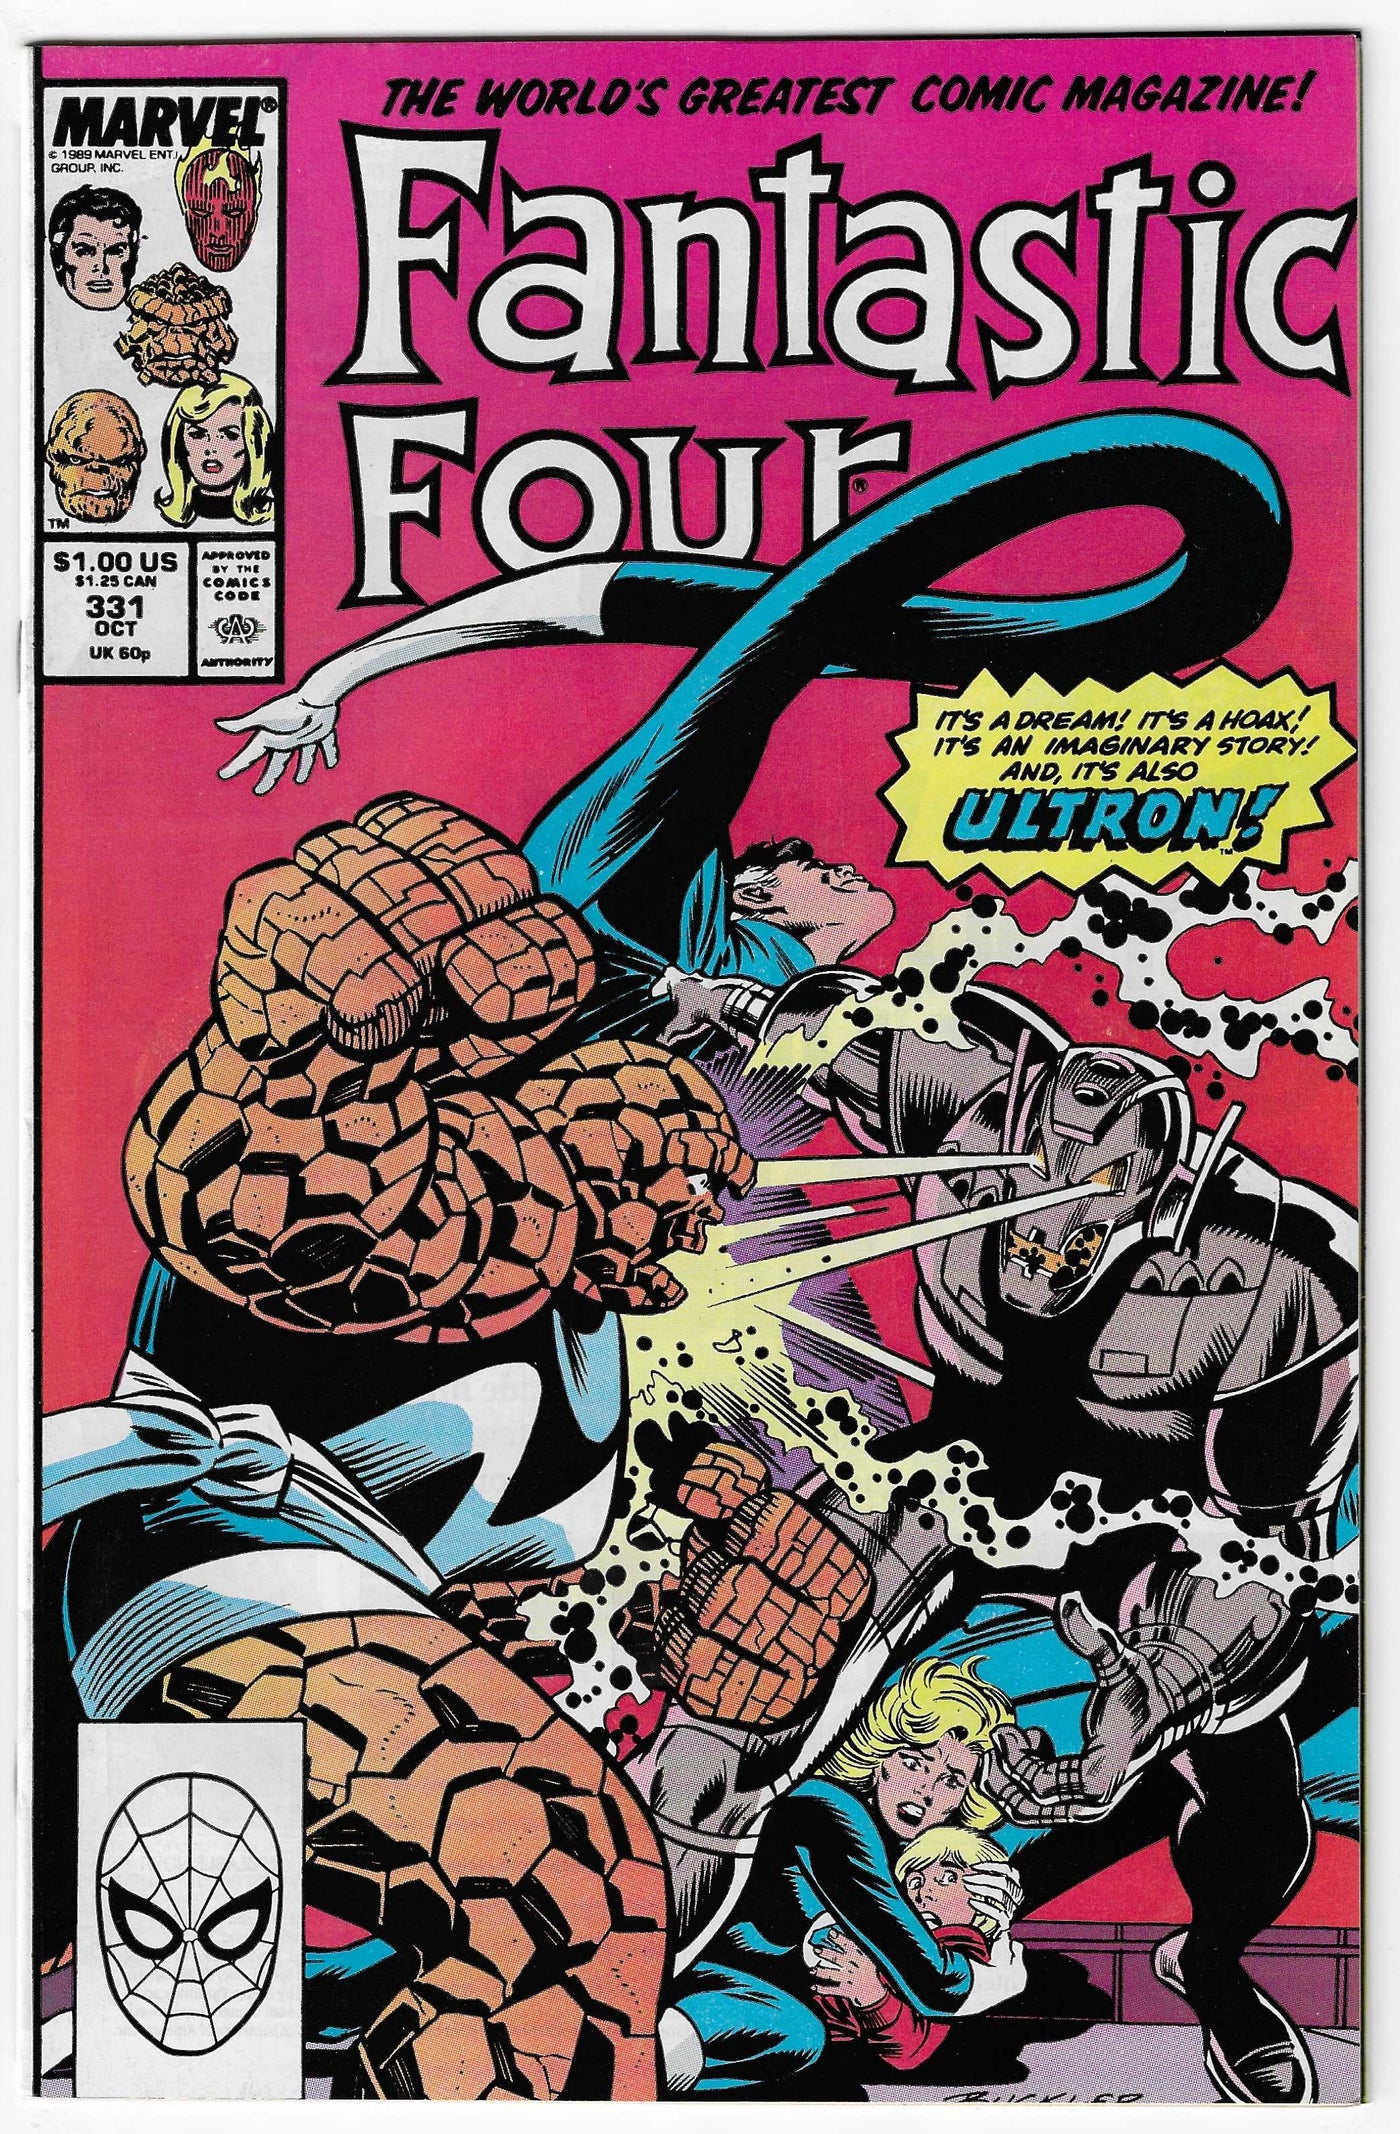 Fantastic Four (Volume 1) #331